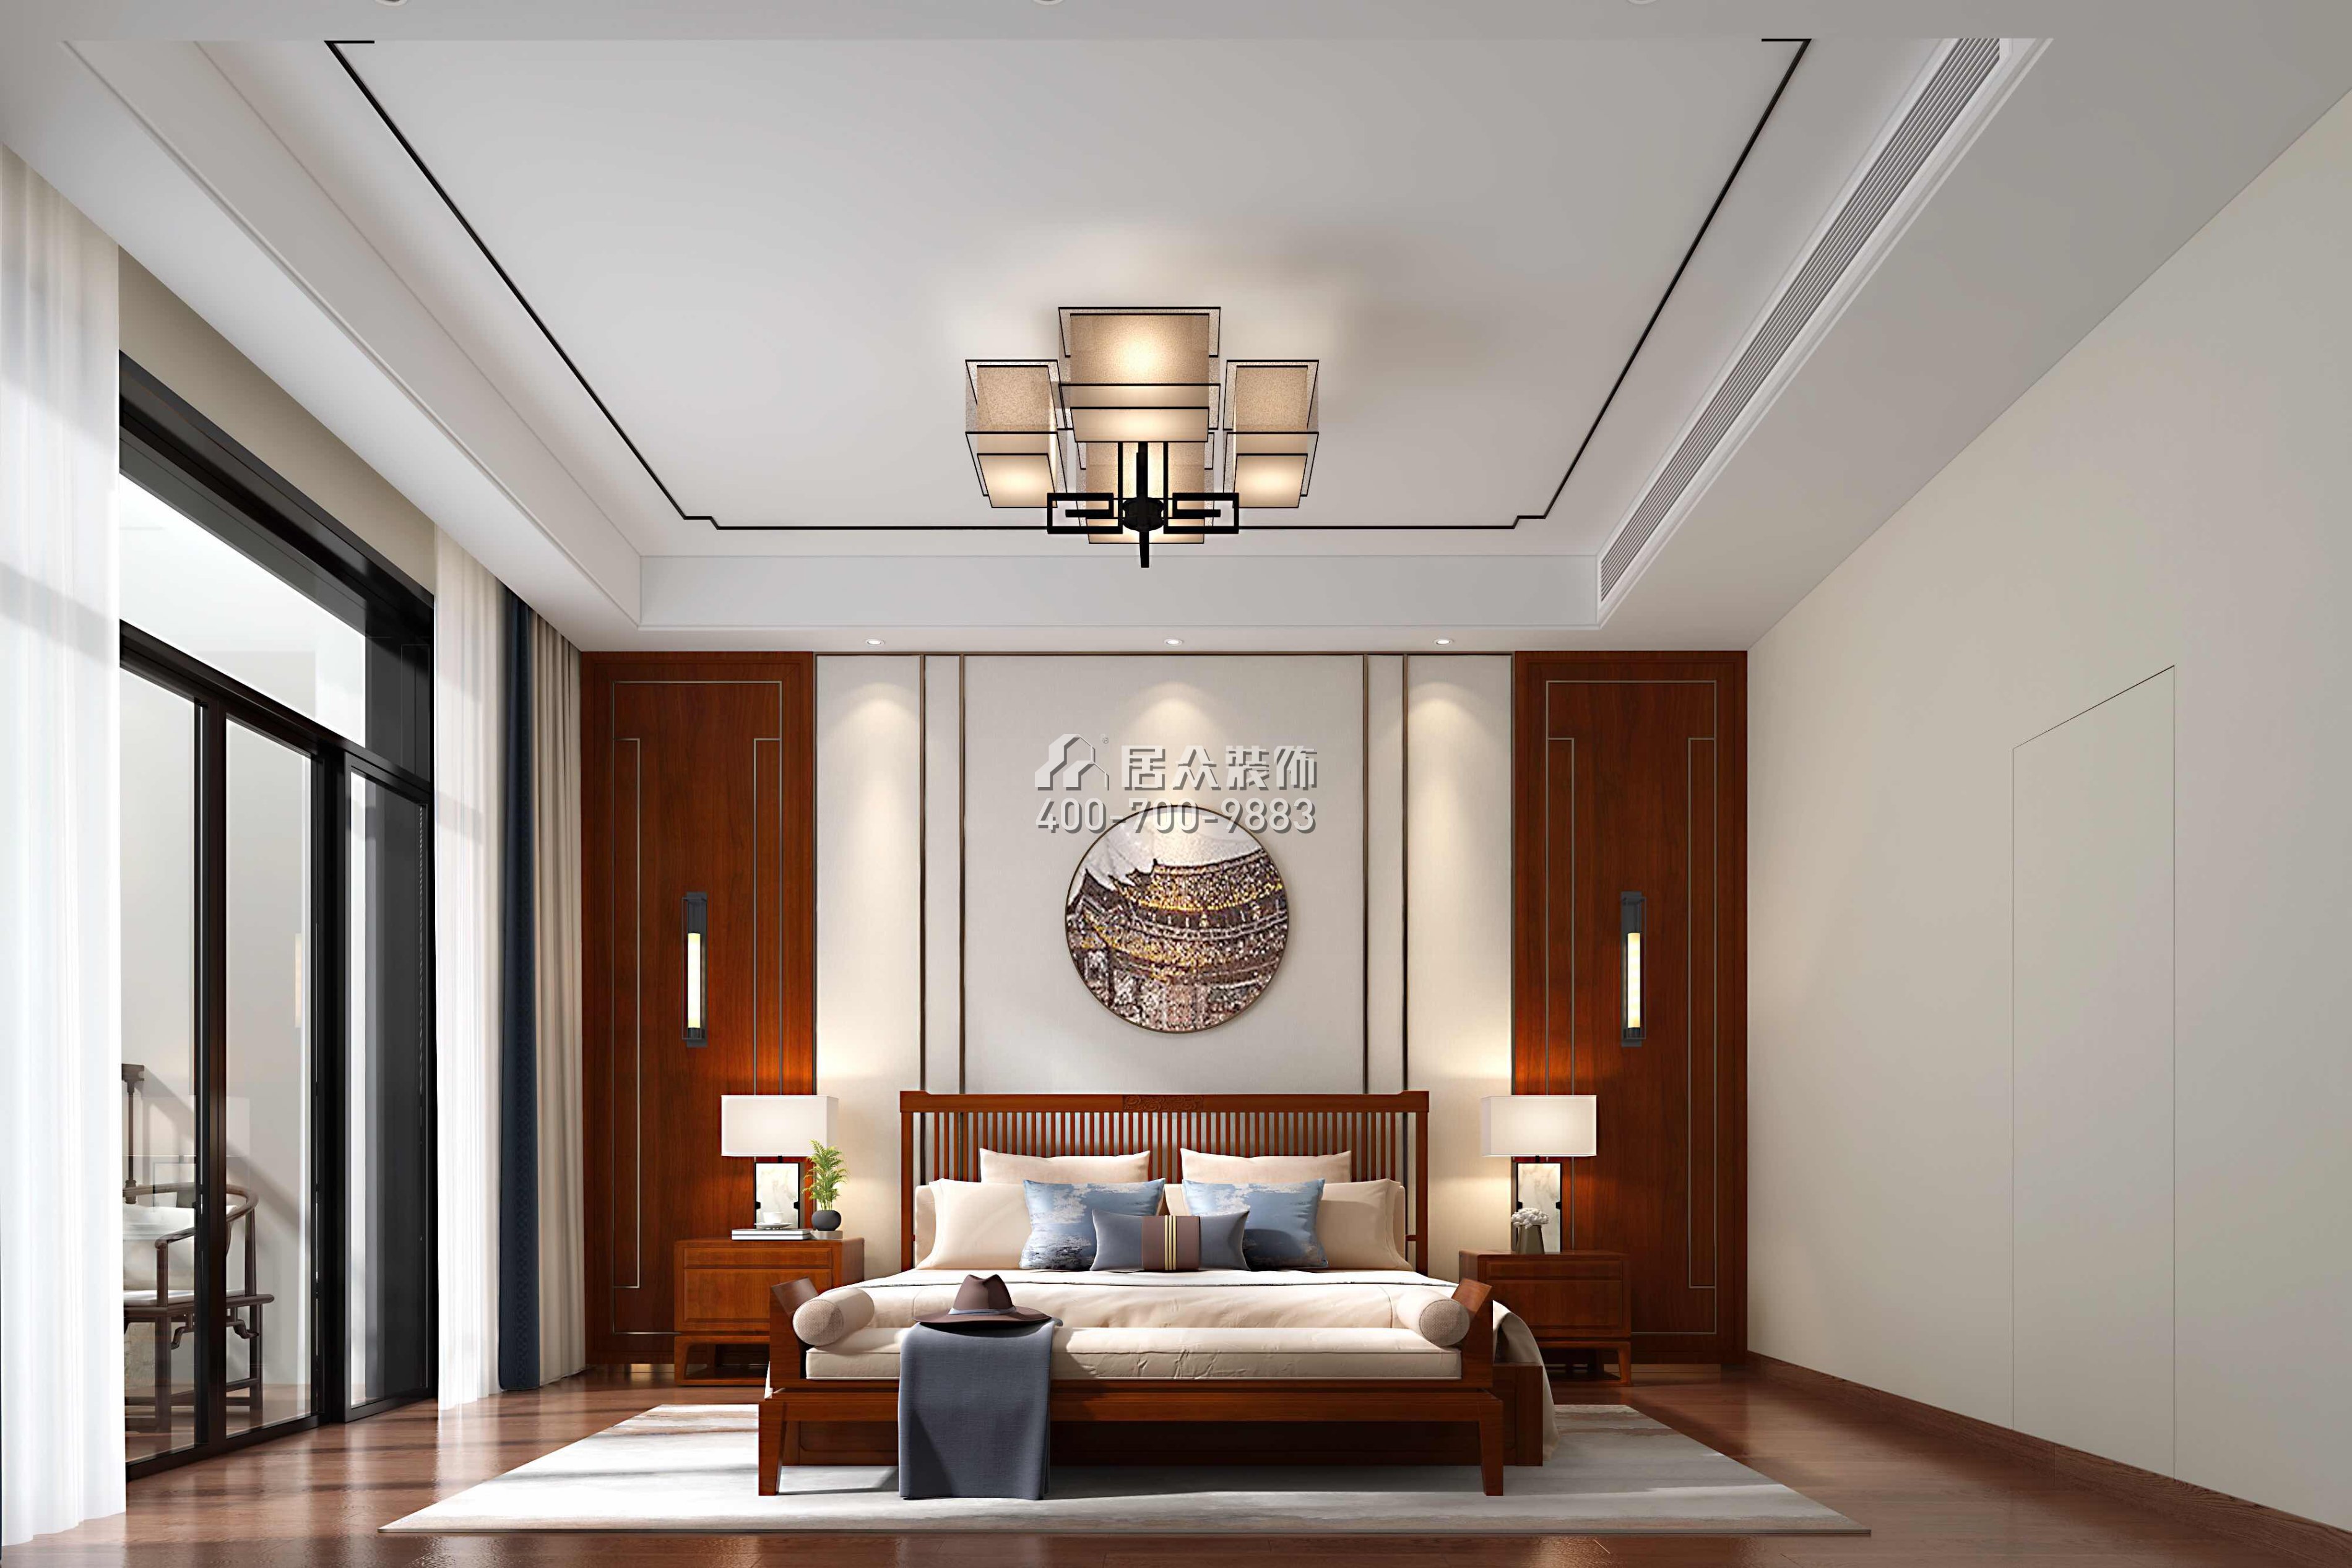 雅居樂白鷺湖300平方米中式風格平層戶型臥室裝修效果圖